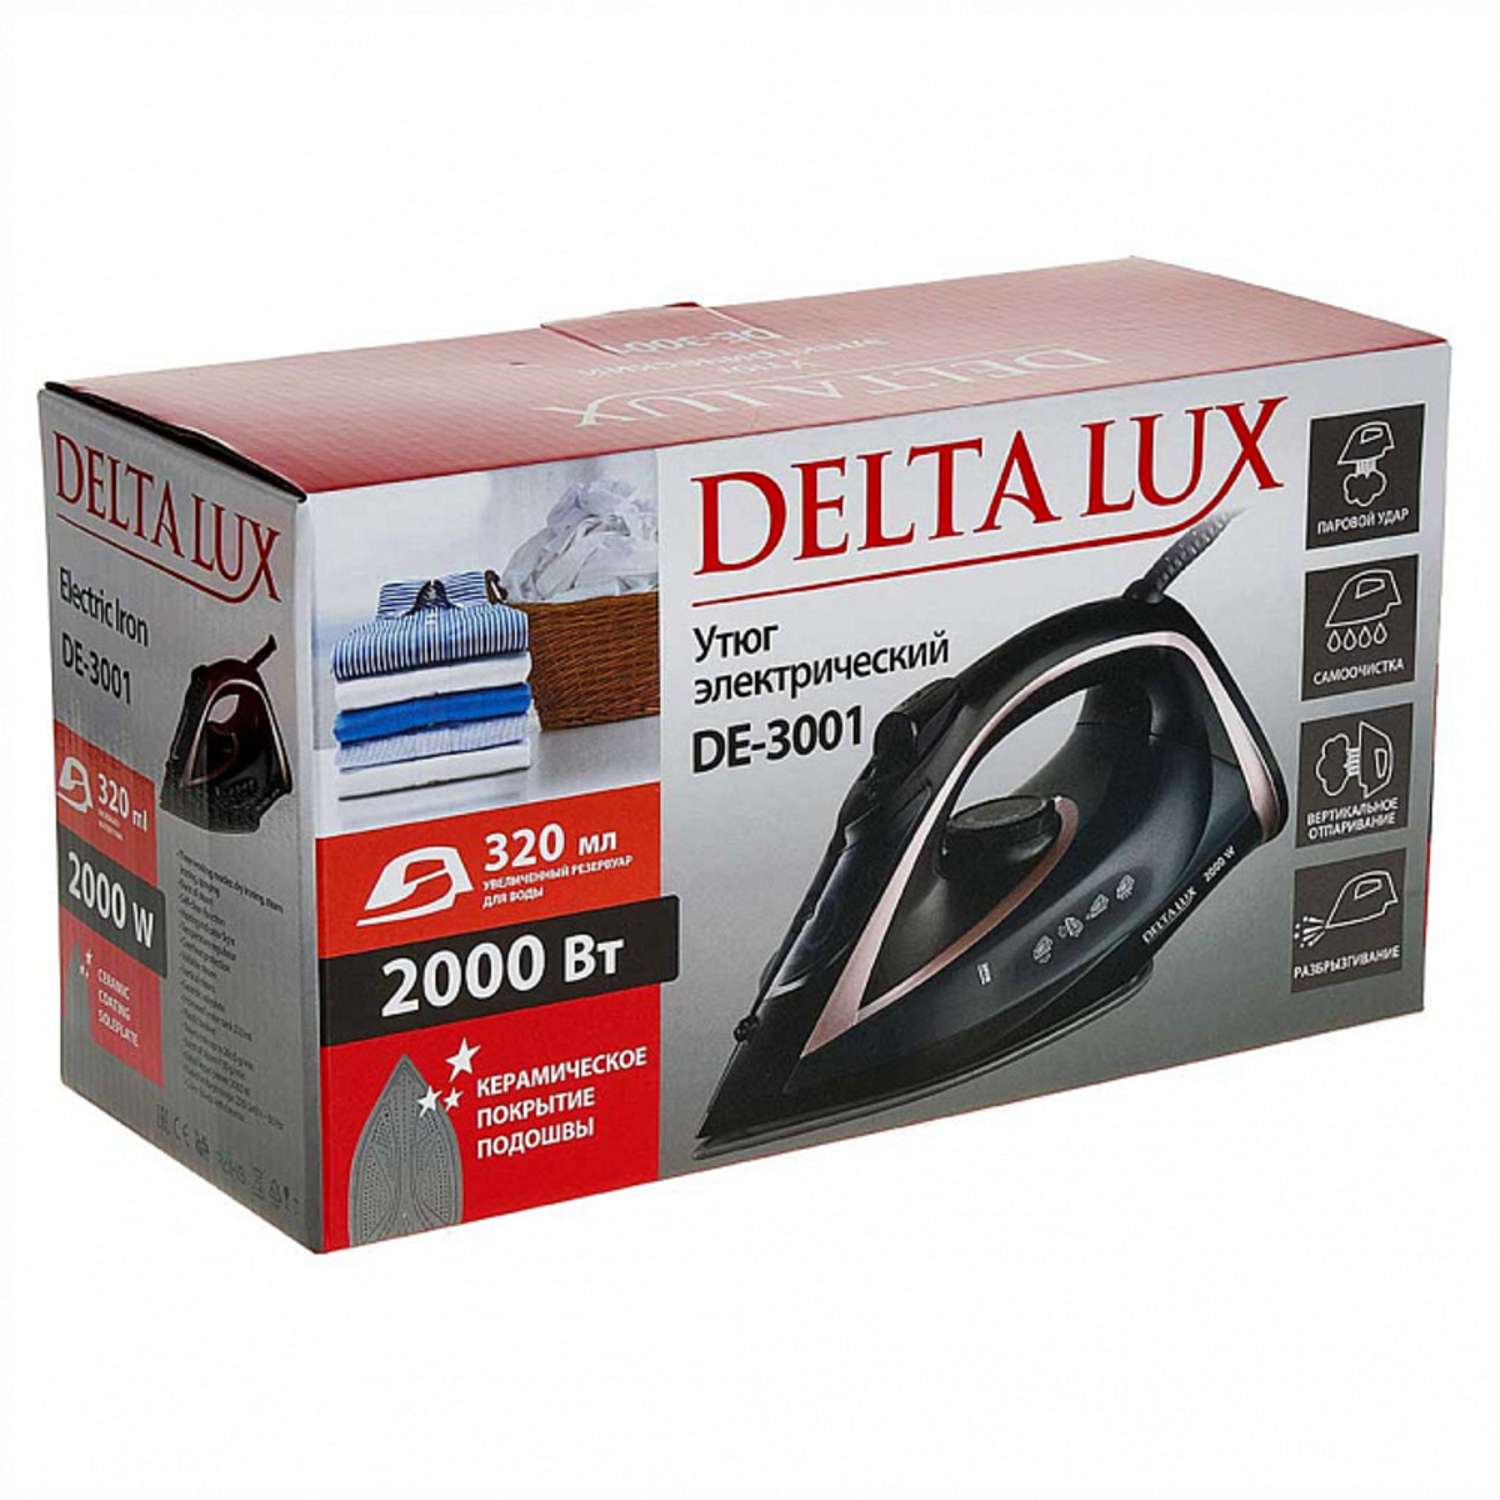 Утюг Delta Lux DE-3001 черный с бронзовым 2000 Вт керамика самоочистка паровой удар 320 мл - фото 6